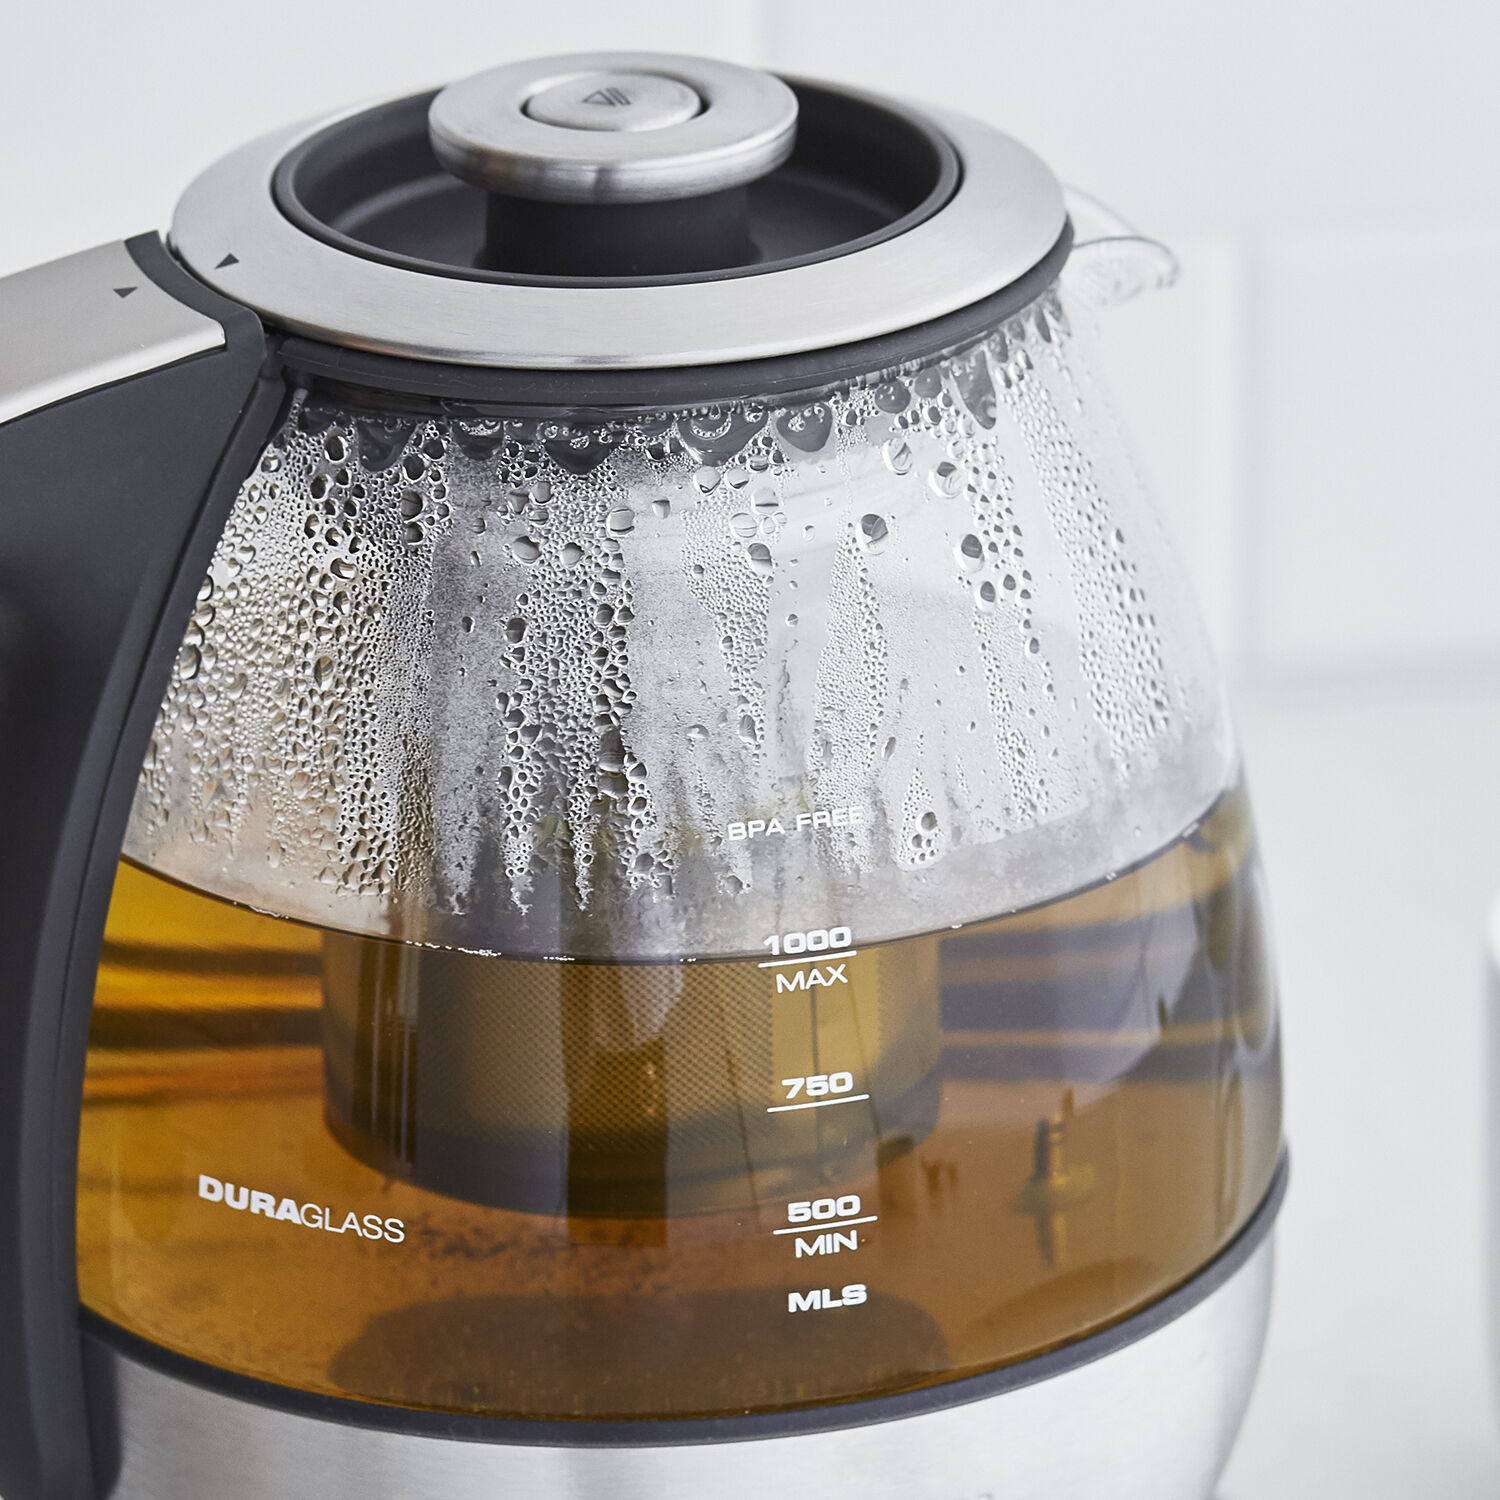 breville smart tea infuser review